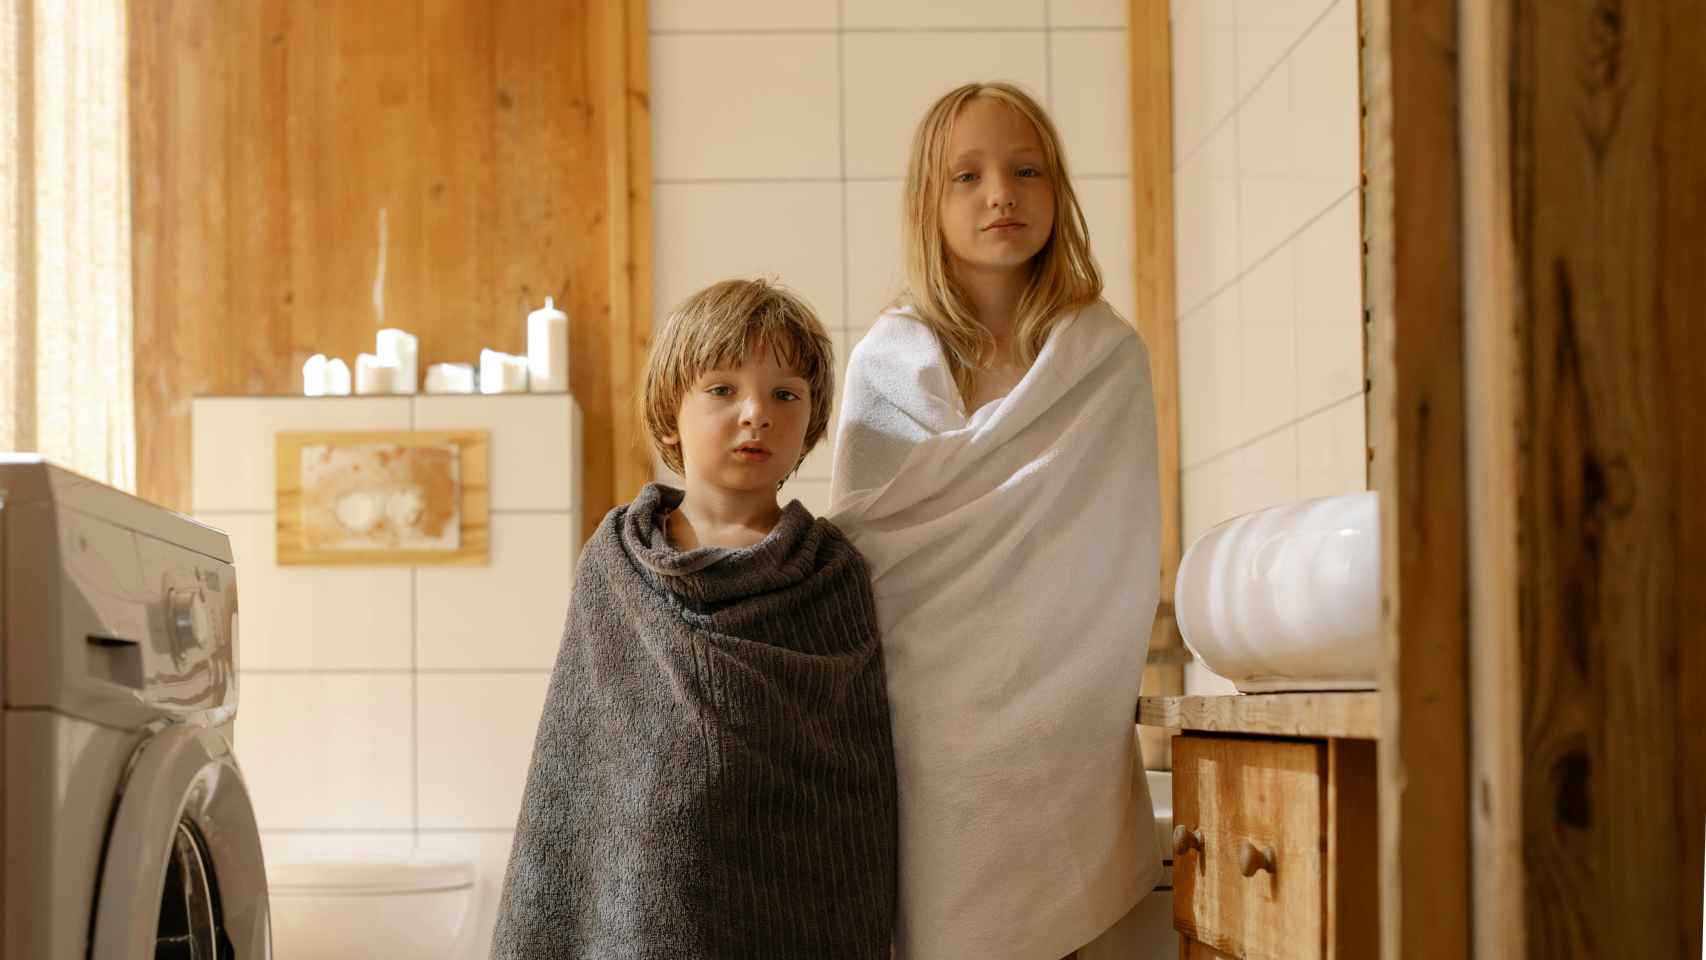 Imagen de dos niños enrollados con toallas en el baño